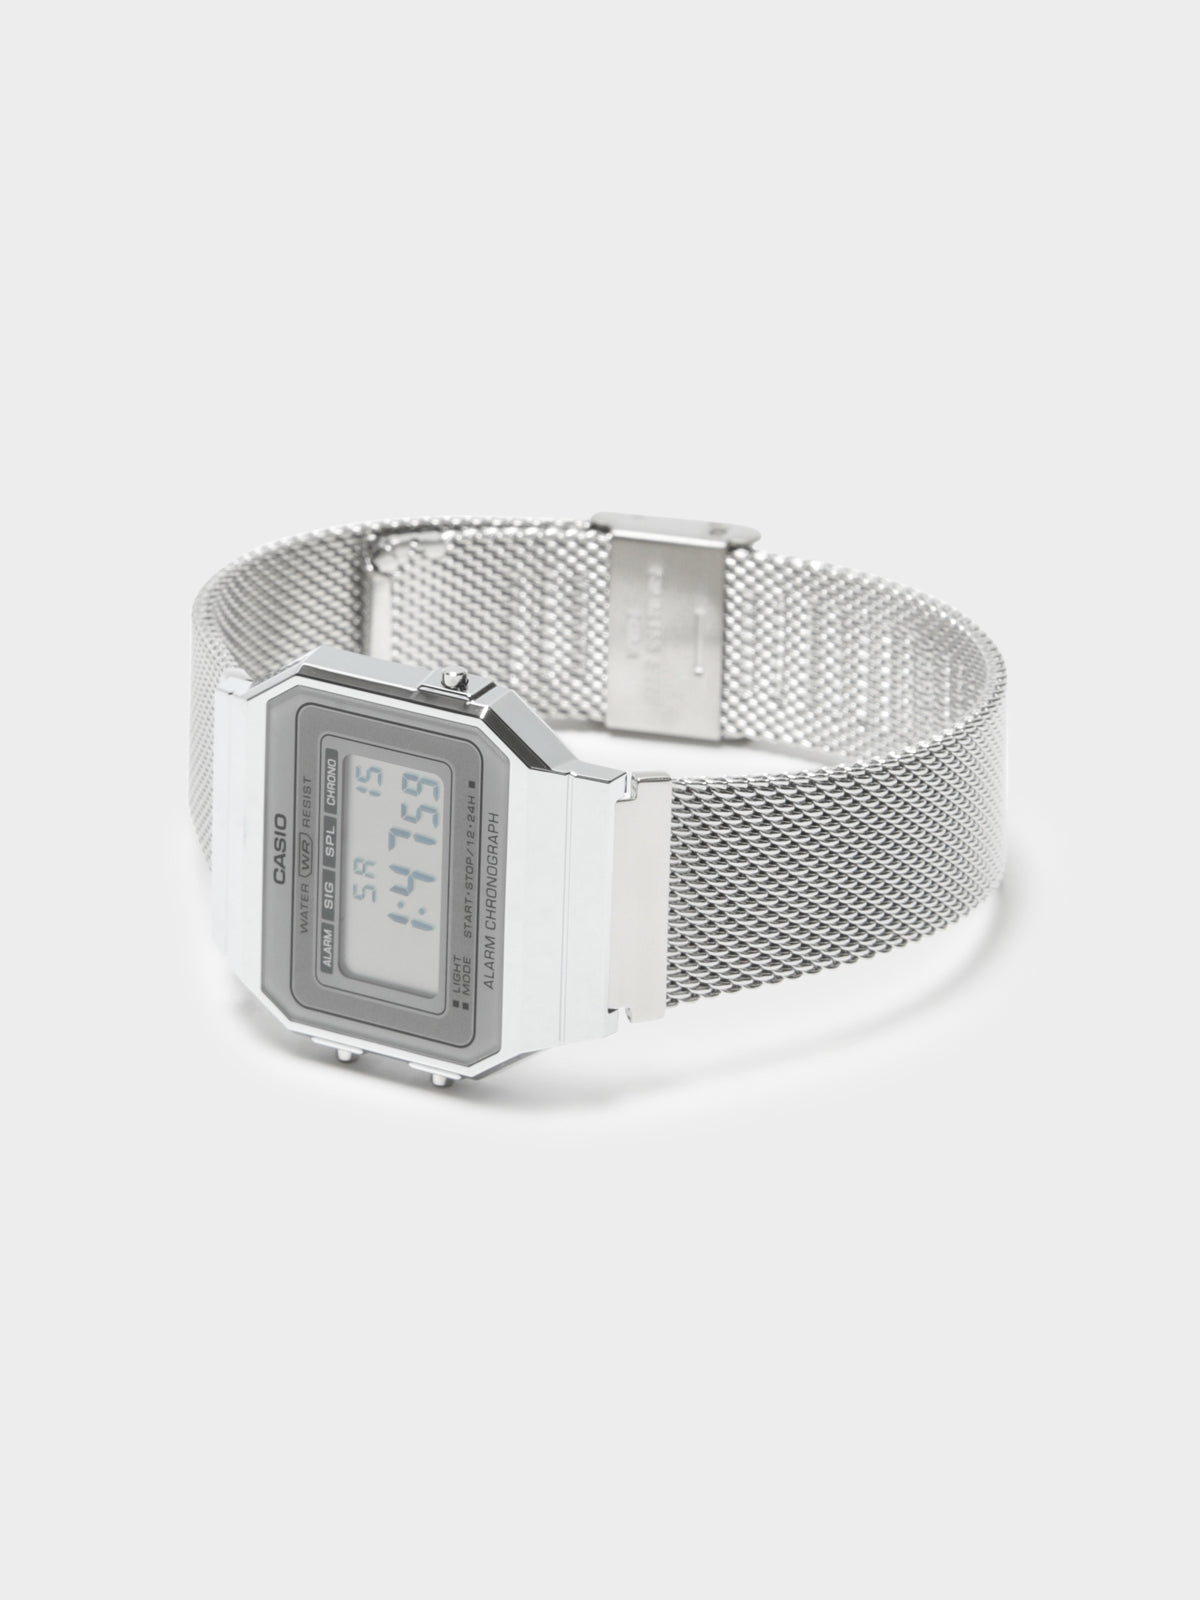 Casio Super Slim Watch in Silver